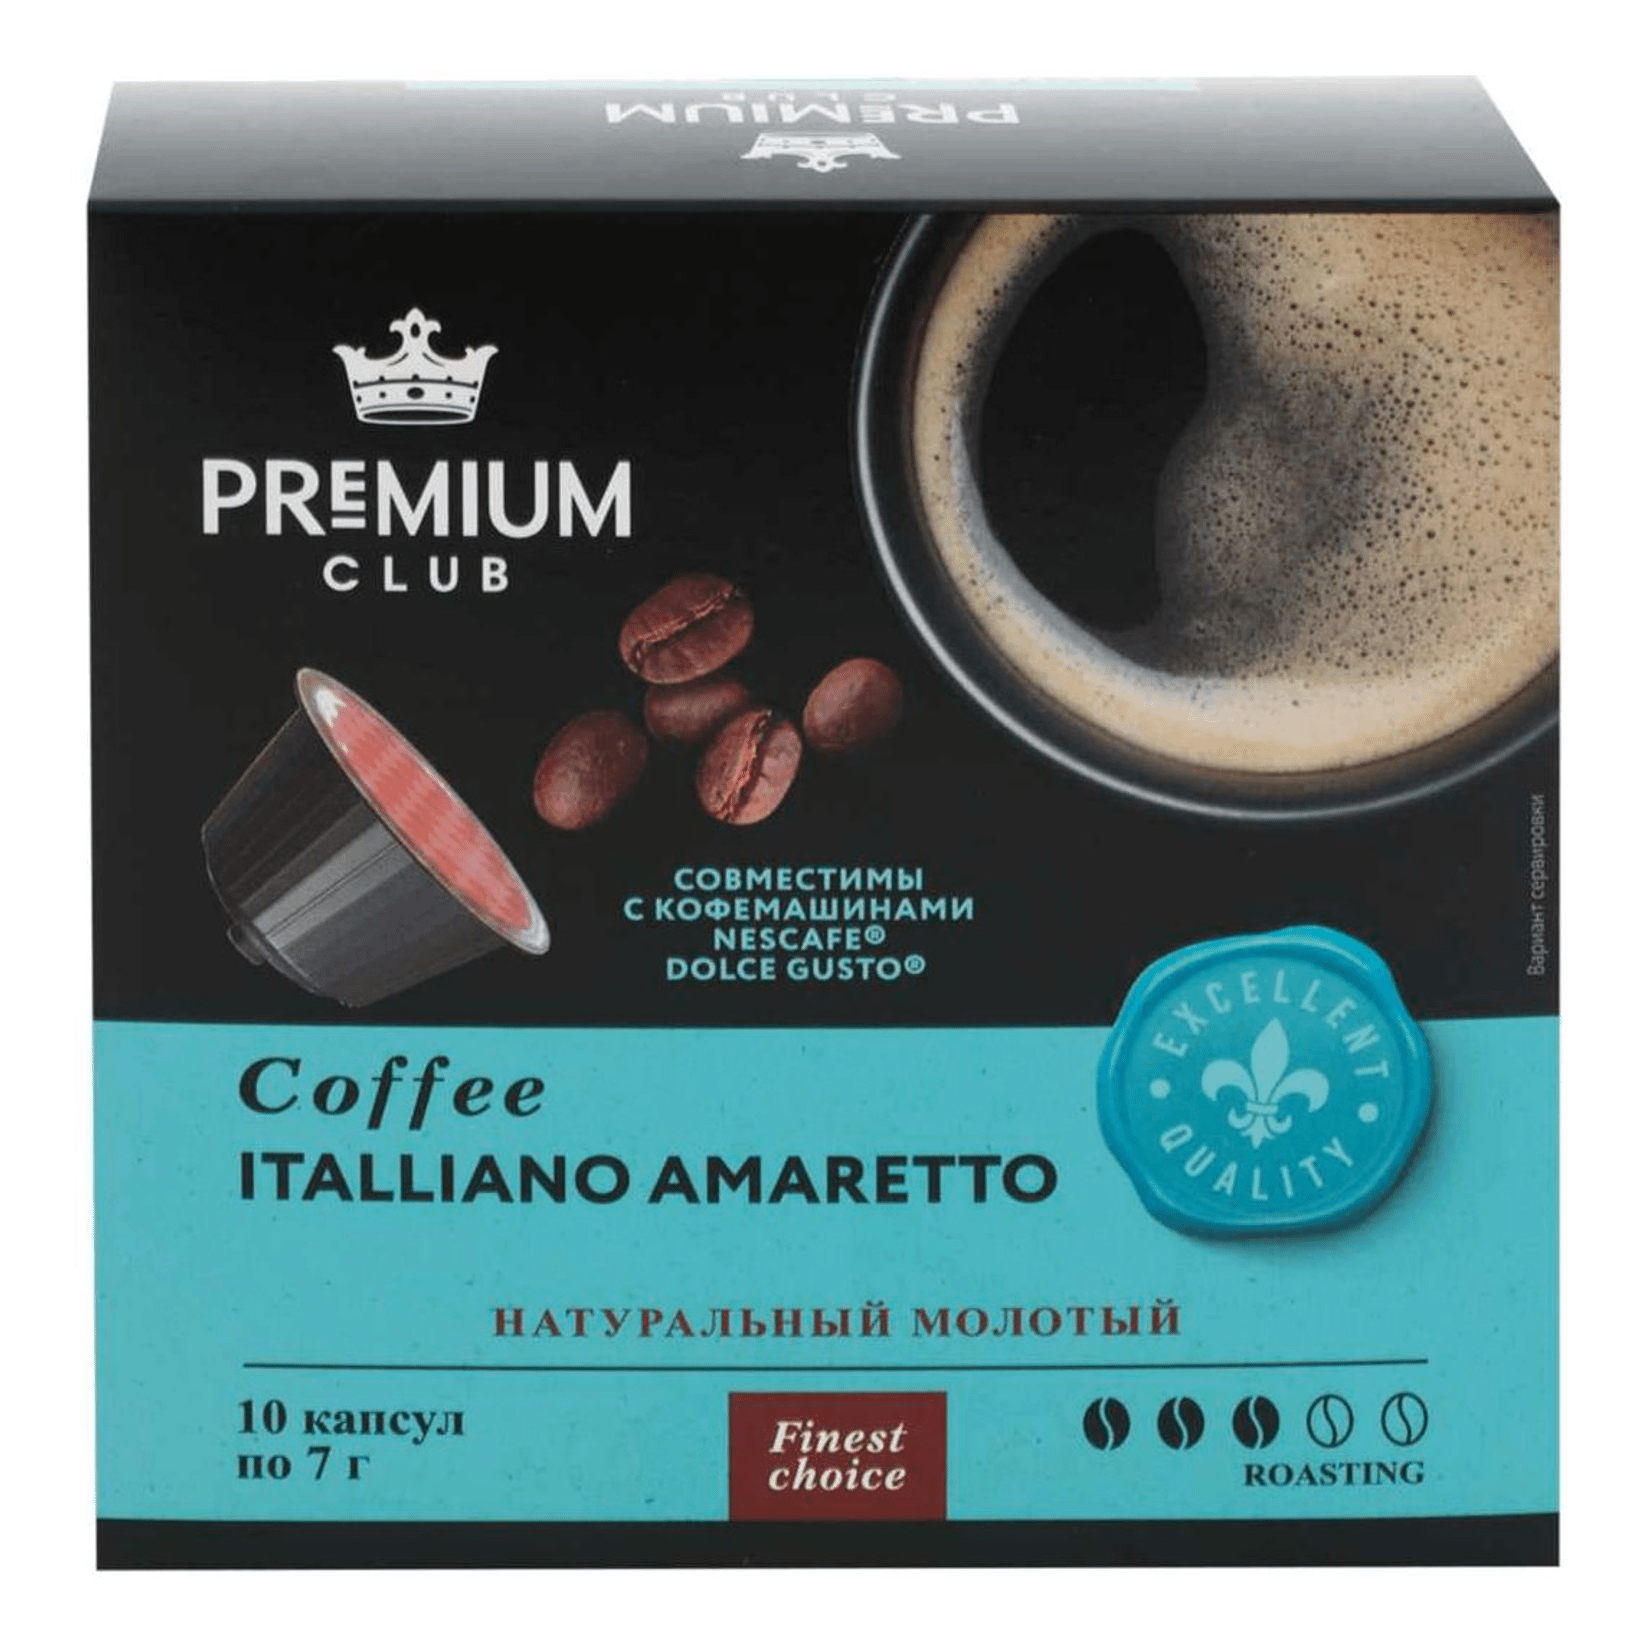 Кофе Premium Club Italliano amaretto в капсулах 7 г х 10 шт